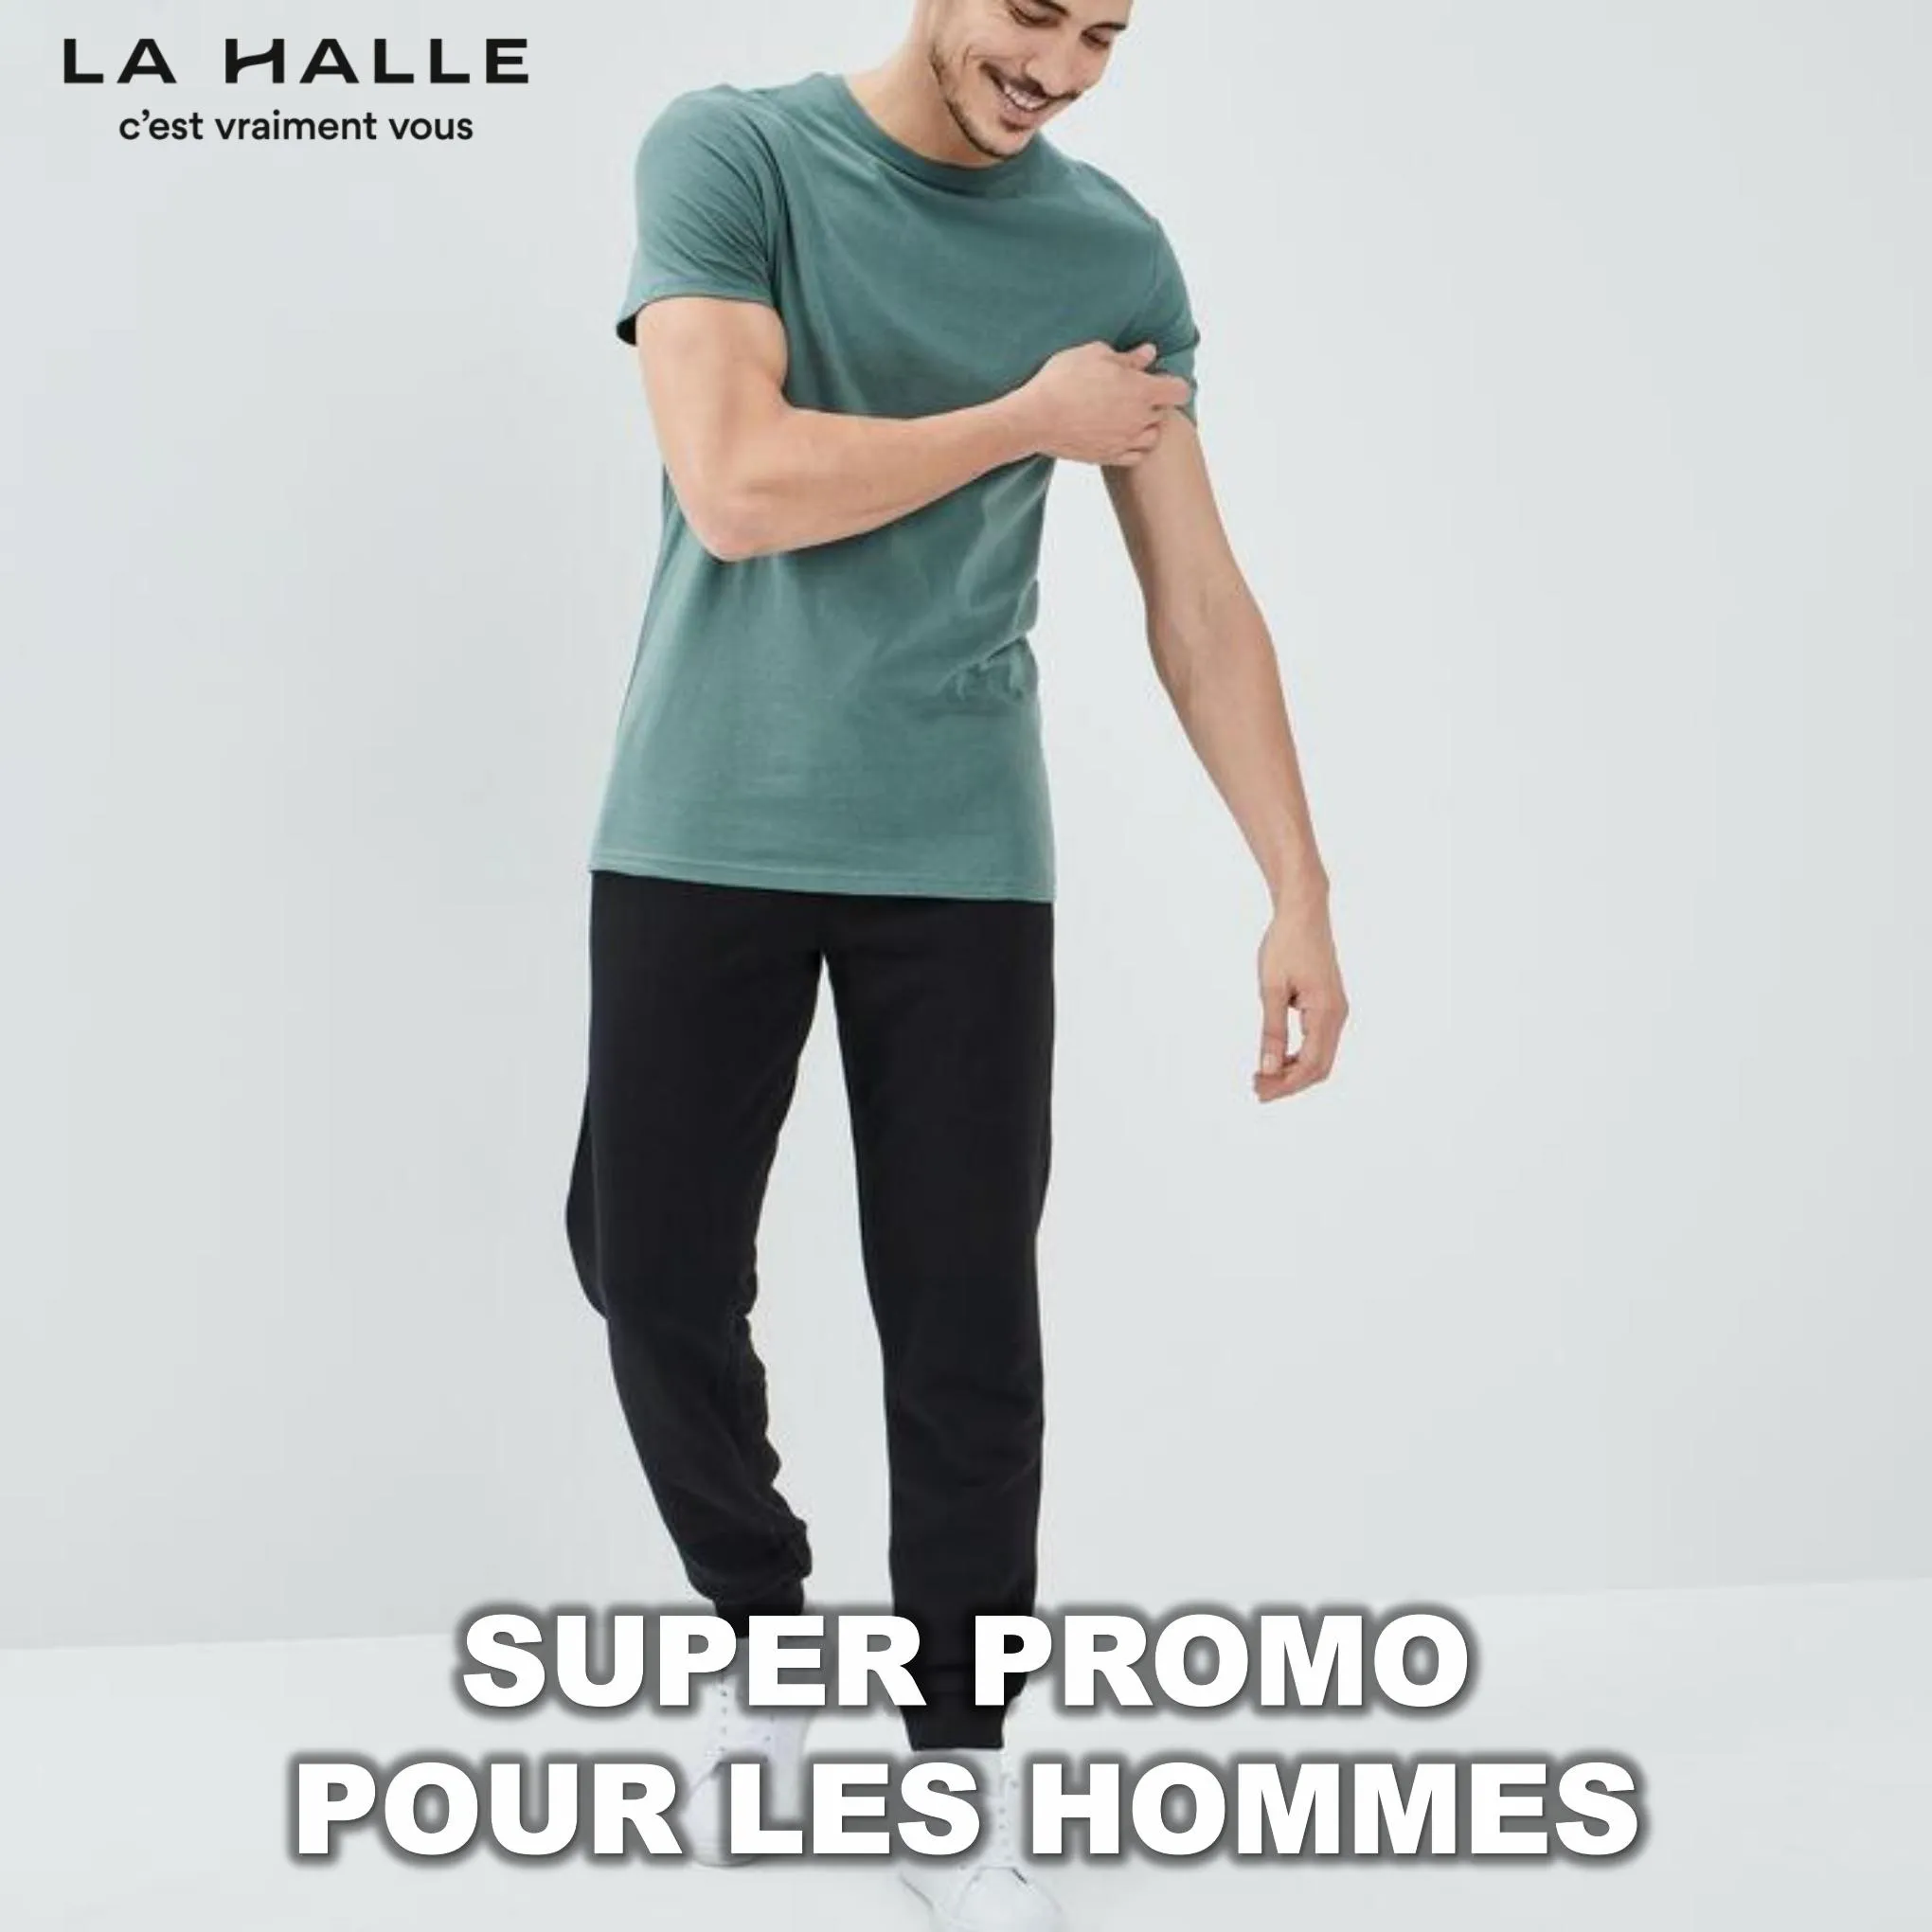 Catalogue Super promo pour les hommes, page 00001